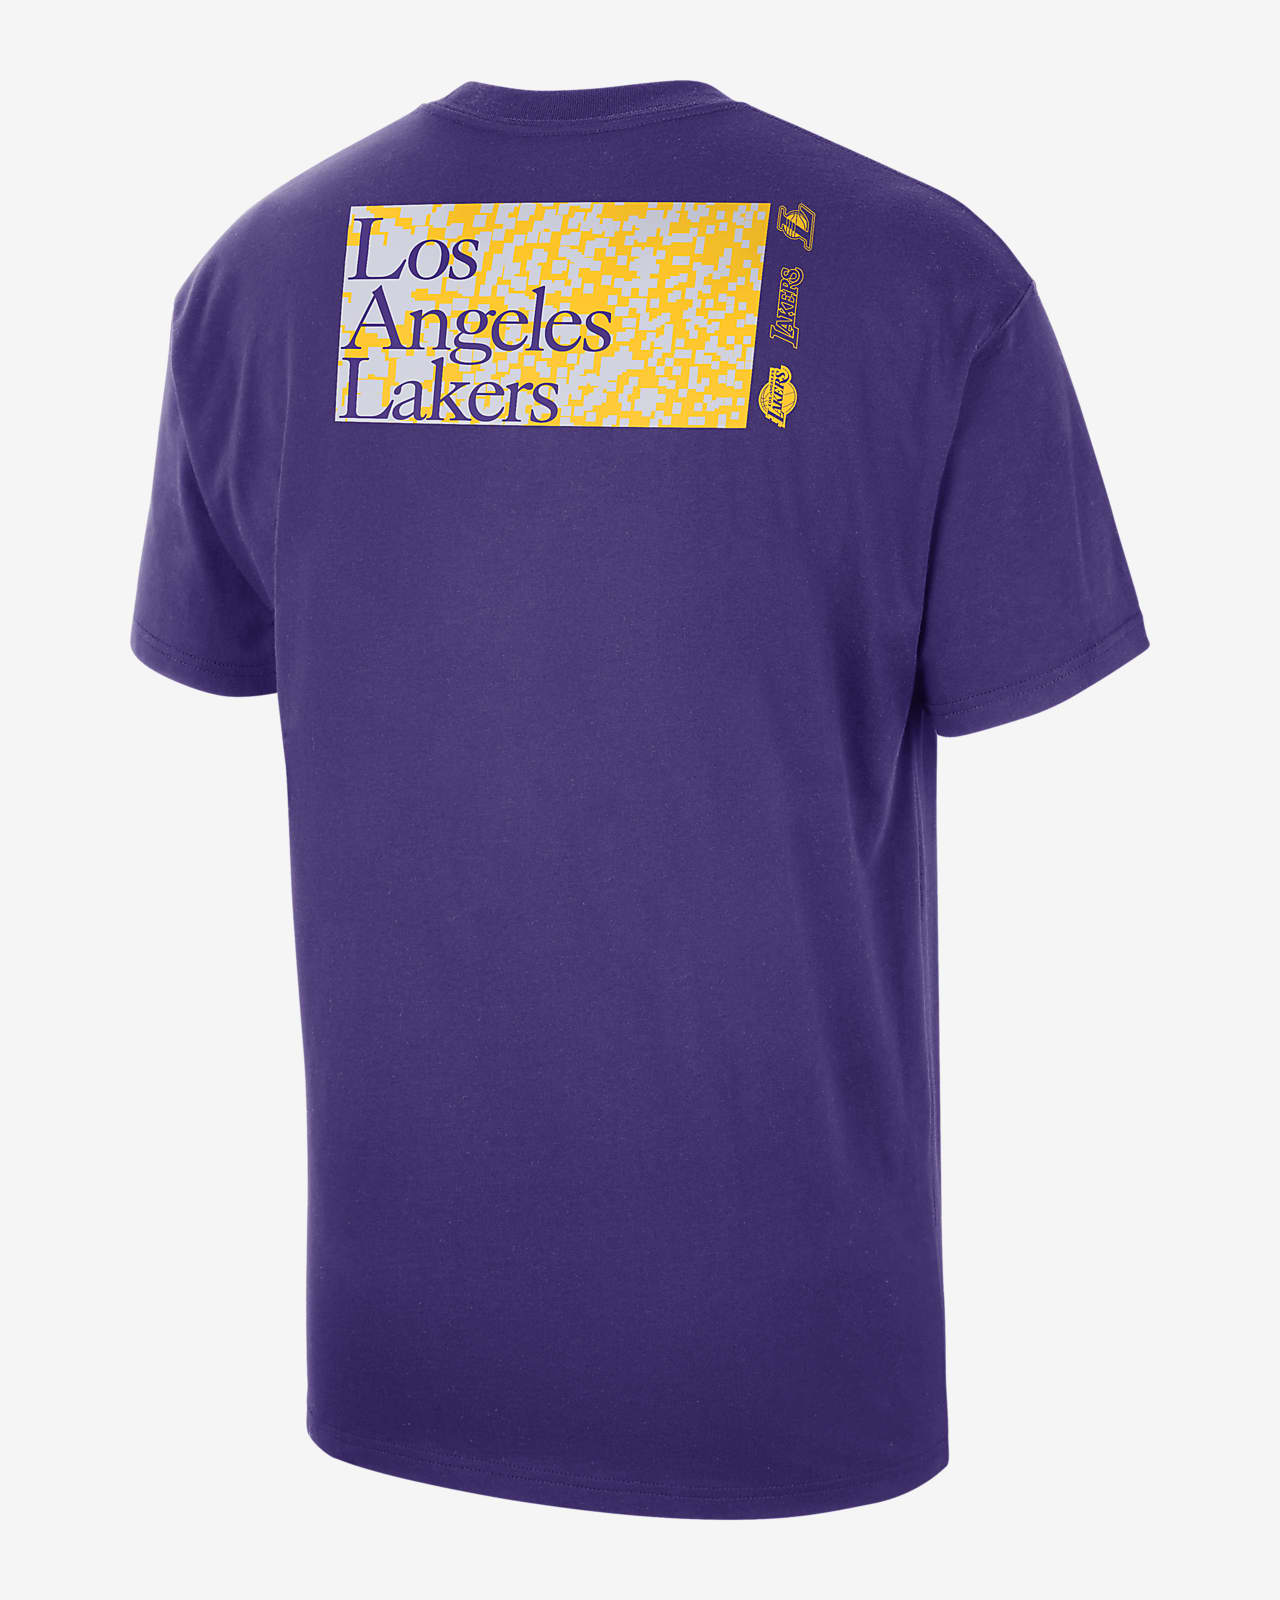 ロサンゼルス レイカーズ メンズ ナイキ NBA マックス90 Tシャツ